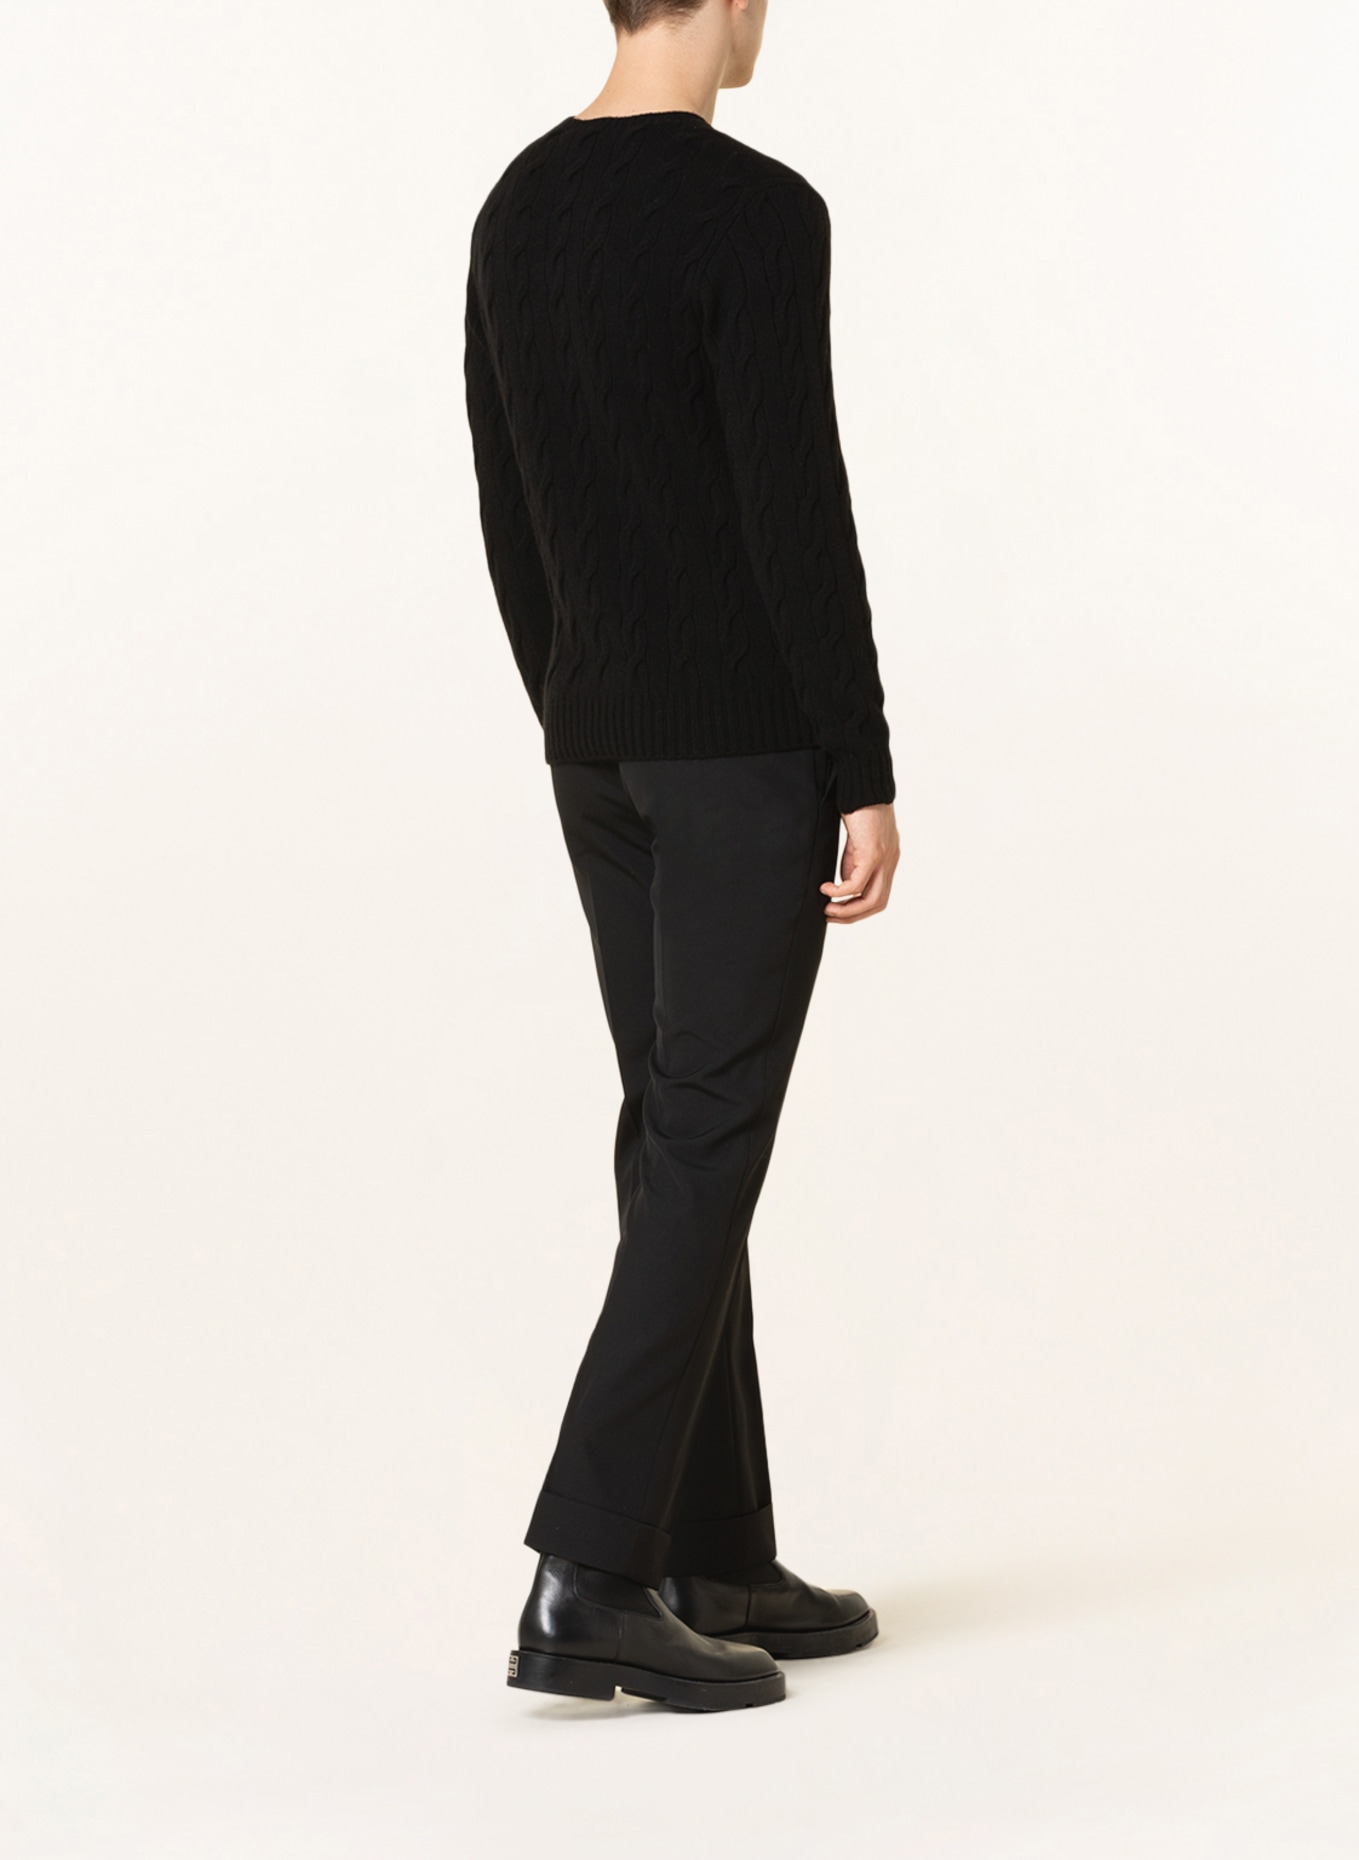 RALPH LAUREN PURPLE LABEL Cashmere sweater, Color: BLACK (Image 4)